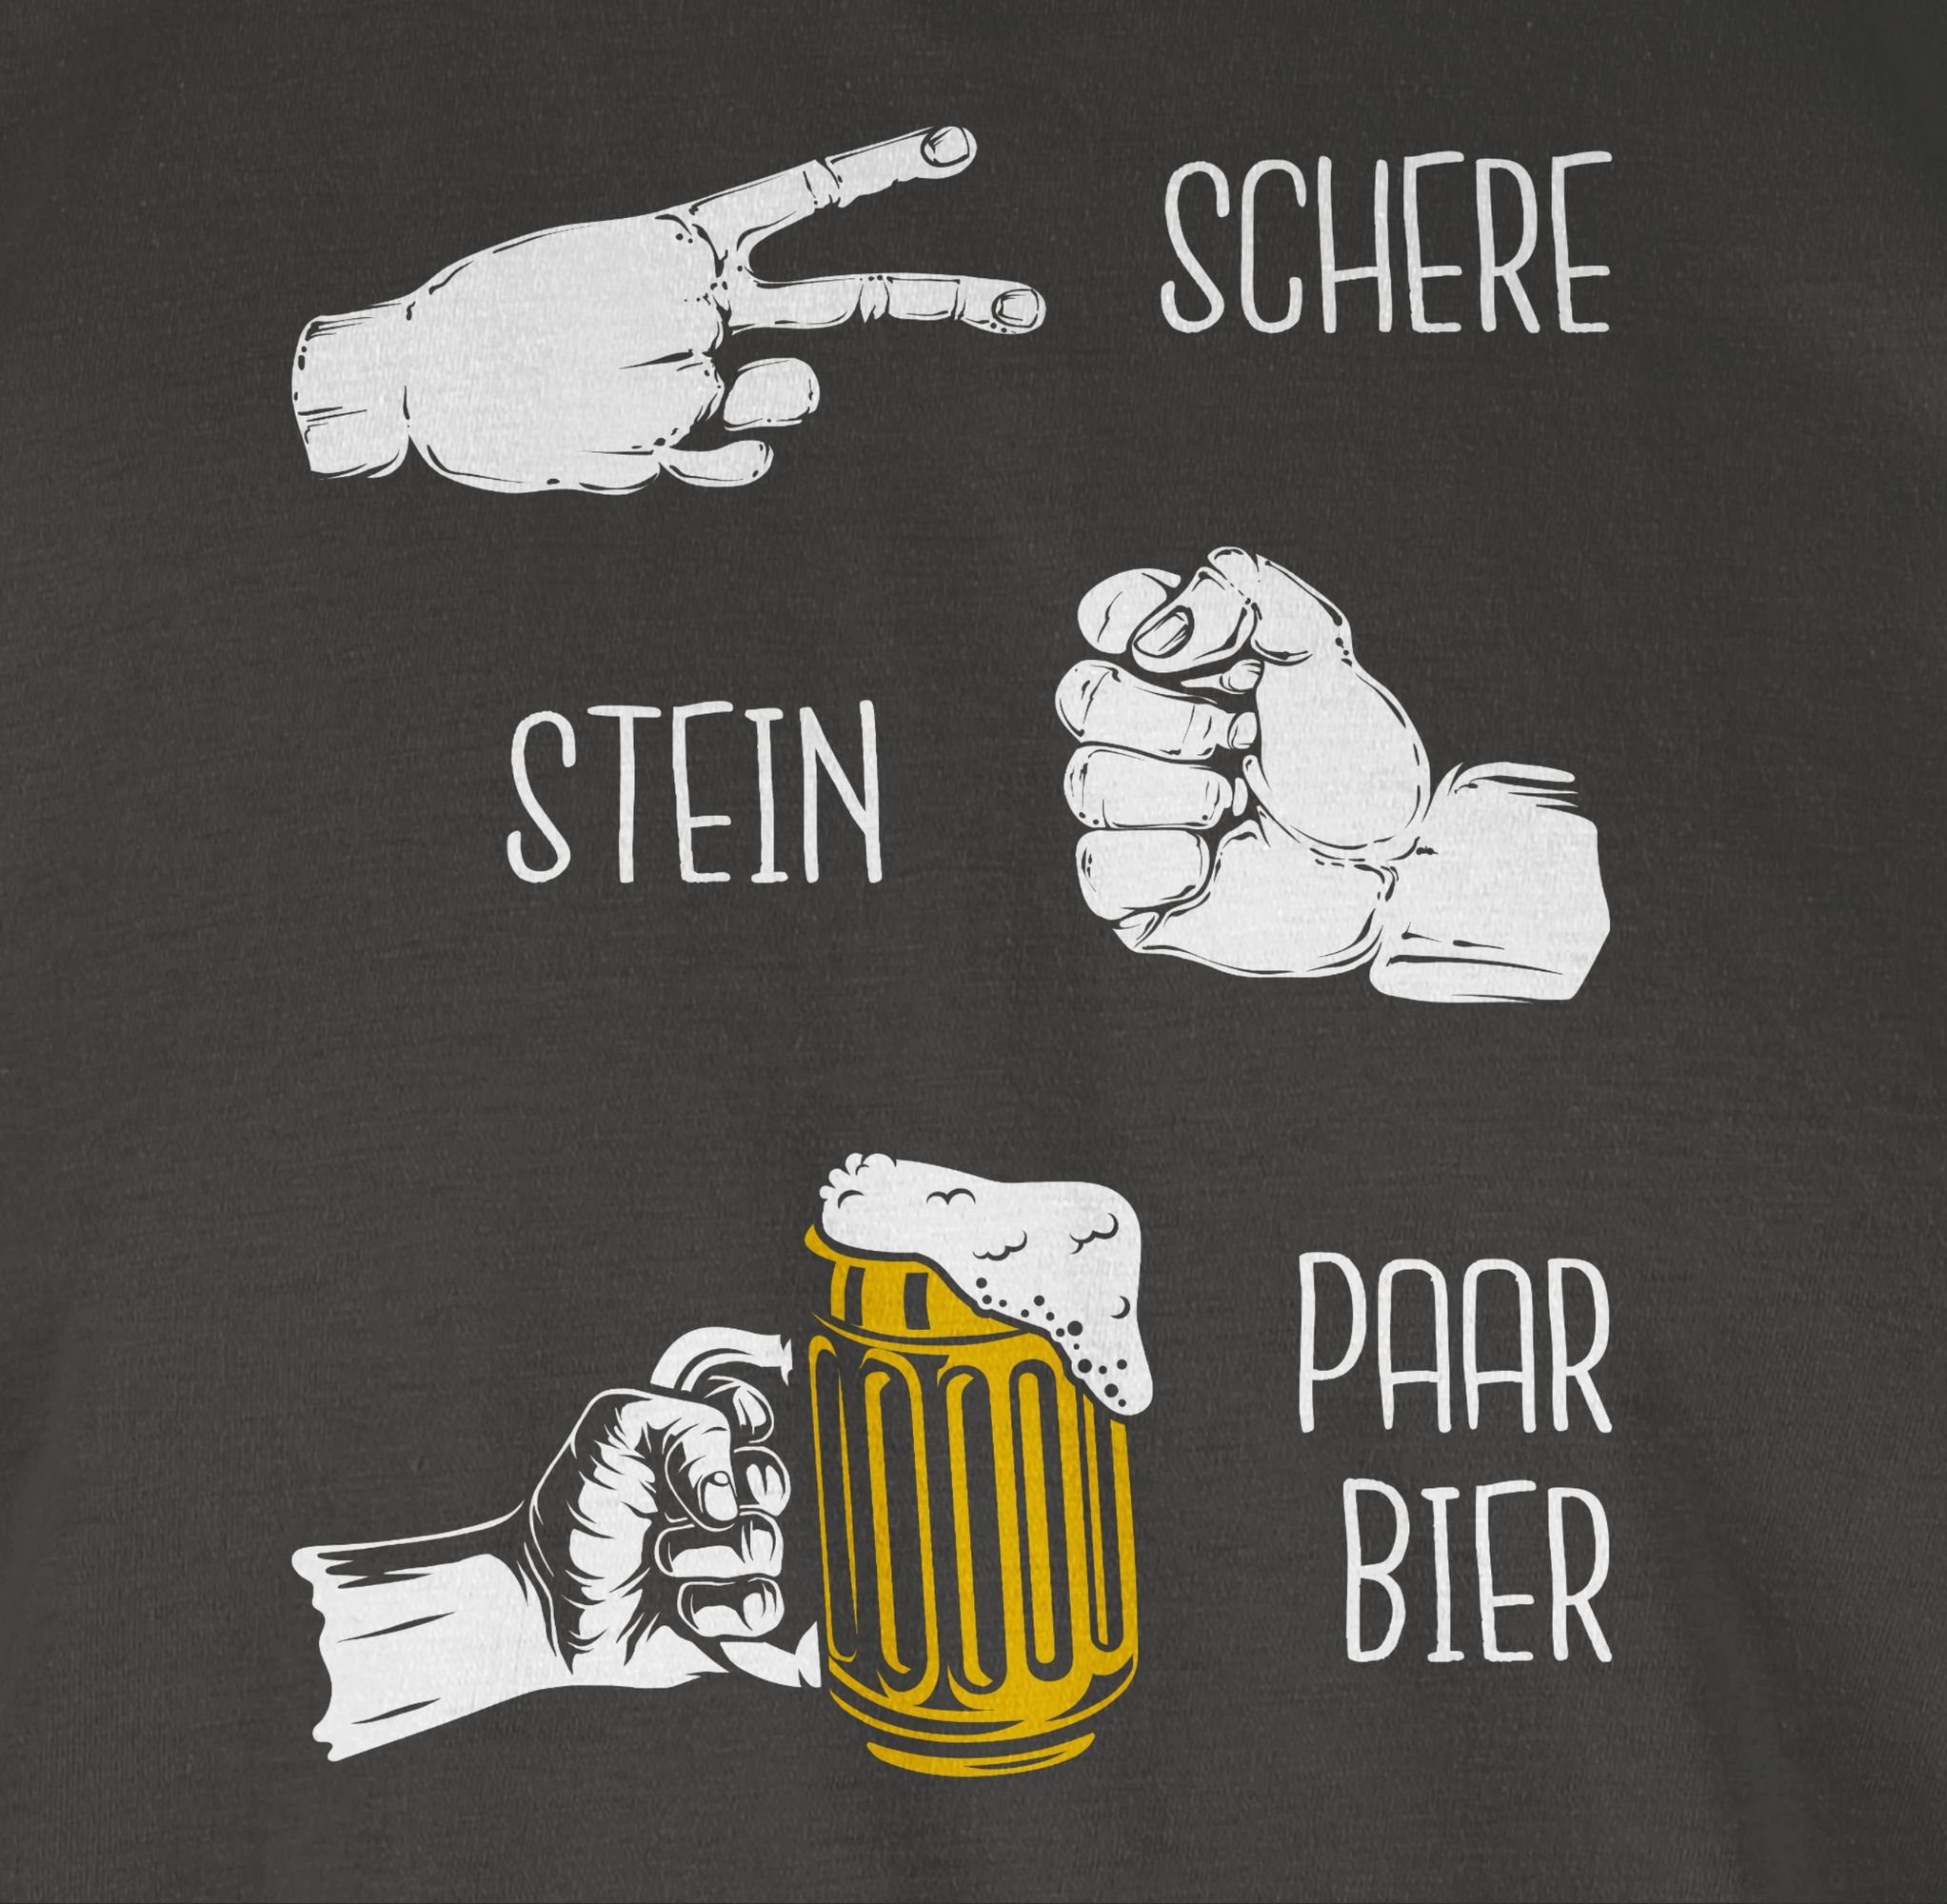 Shirtracer T-Shirt Biergeschenke Lustig Alkohol & - - - 02 Dunkelgrau Stein Schere Party Herren Bier Herrentag Hopfen Geschenk